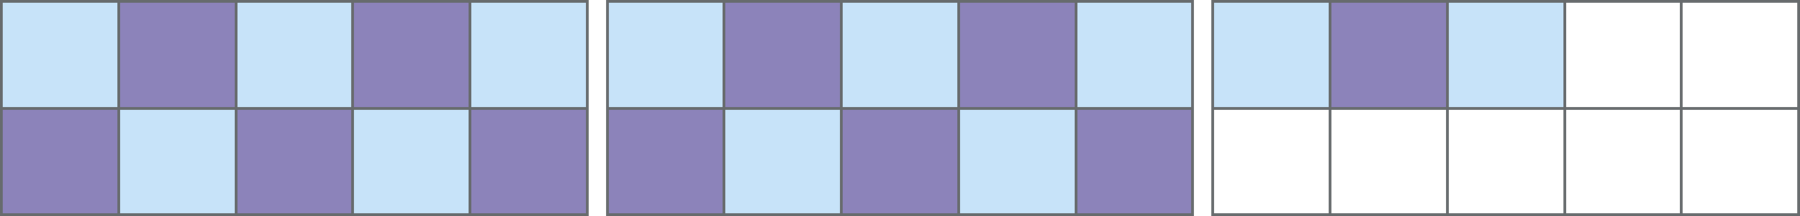 Esquema. Retângulo dividido em 10 partes iguais, da esquerda para a direita as 3 primeiras partes estão pintadas de verde. Retângulo dividido em 10 partes quadradas iguais, dispostas em 2 linhas com 5 partes cada. Há 5 partes roxas e 5 partes azuis clara que se intercalam. Retângulo dividido em 10 partes quadradas iguais, dispostas em 2 linhas com 5 partes cada. Na primeira linha há 1 parte roxa e 2 partes azuis clara que se intercalam.